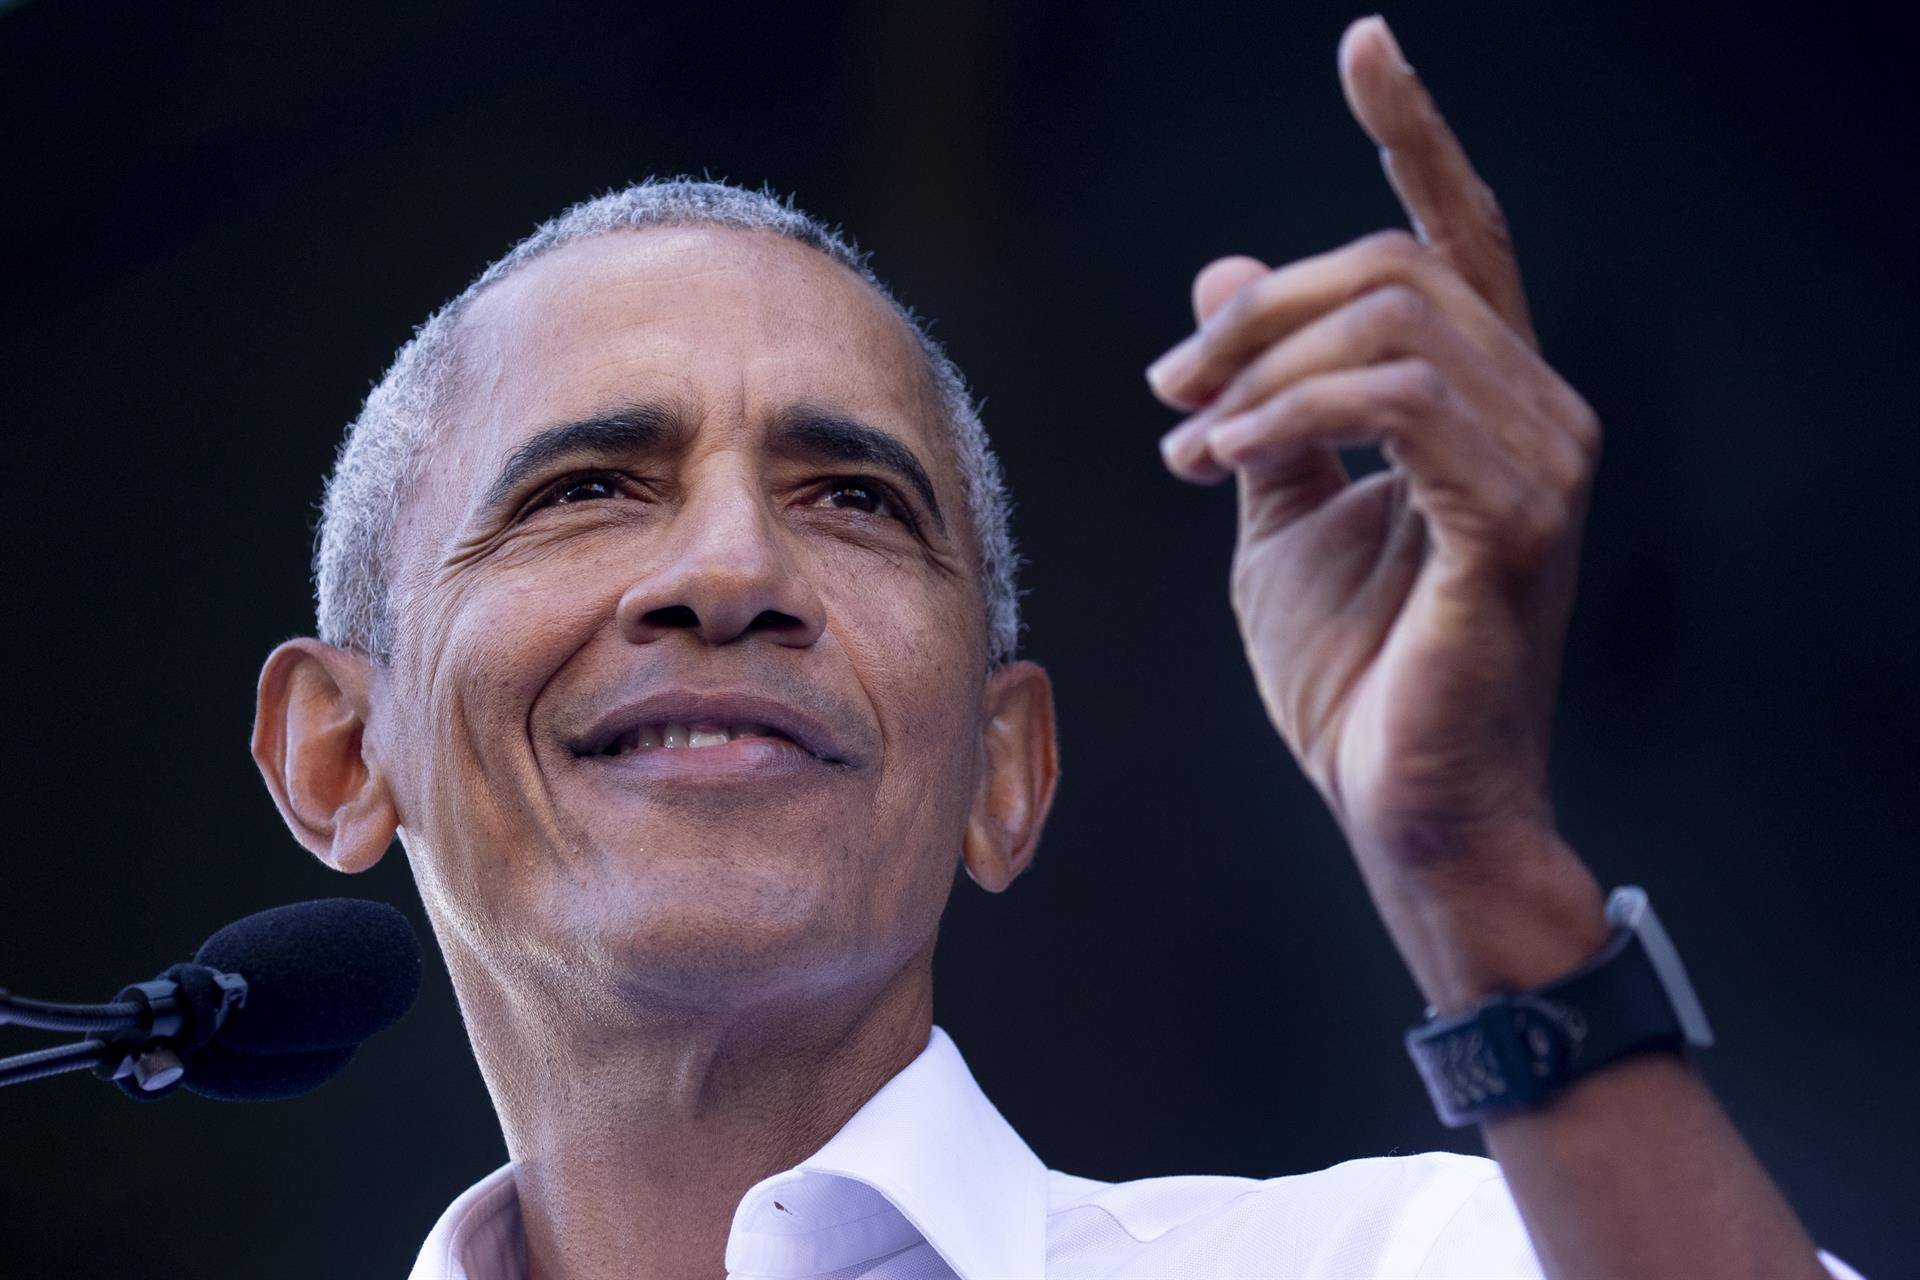 Obama reconecta con el que fuera el niño de su foto favorita en Casa Blanca